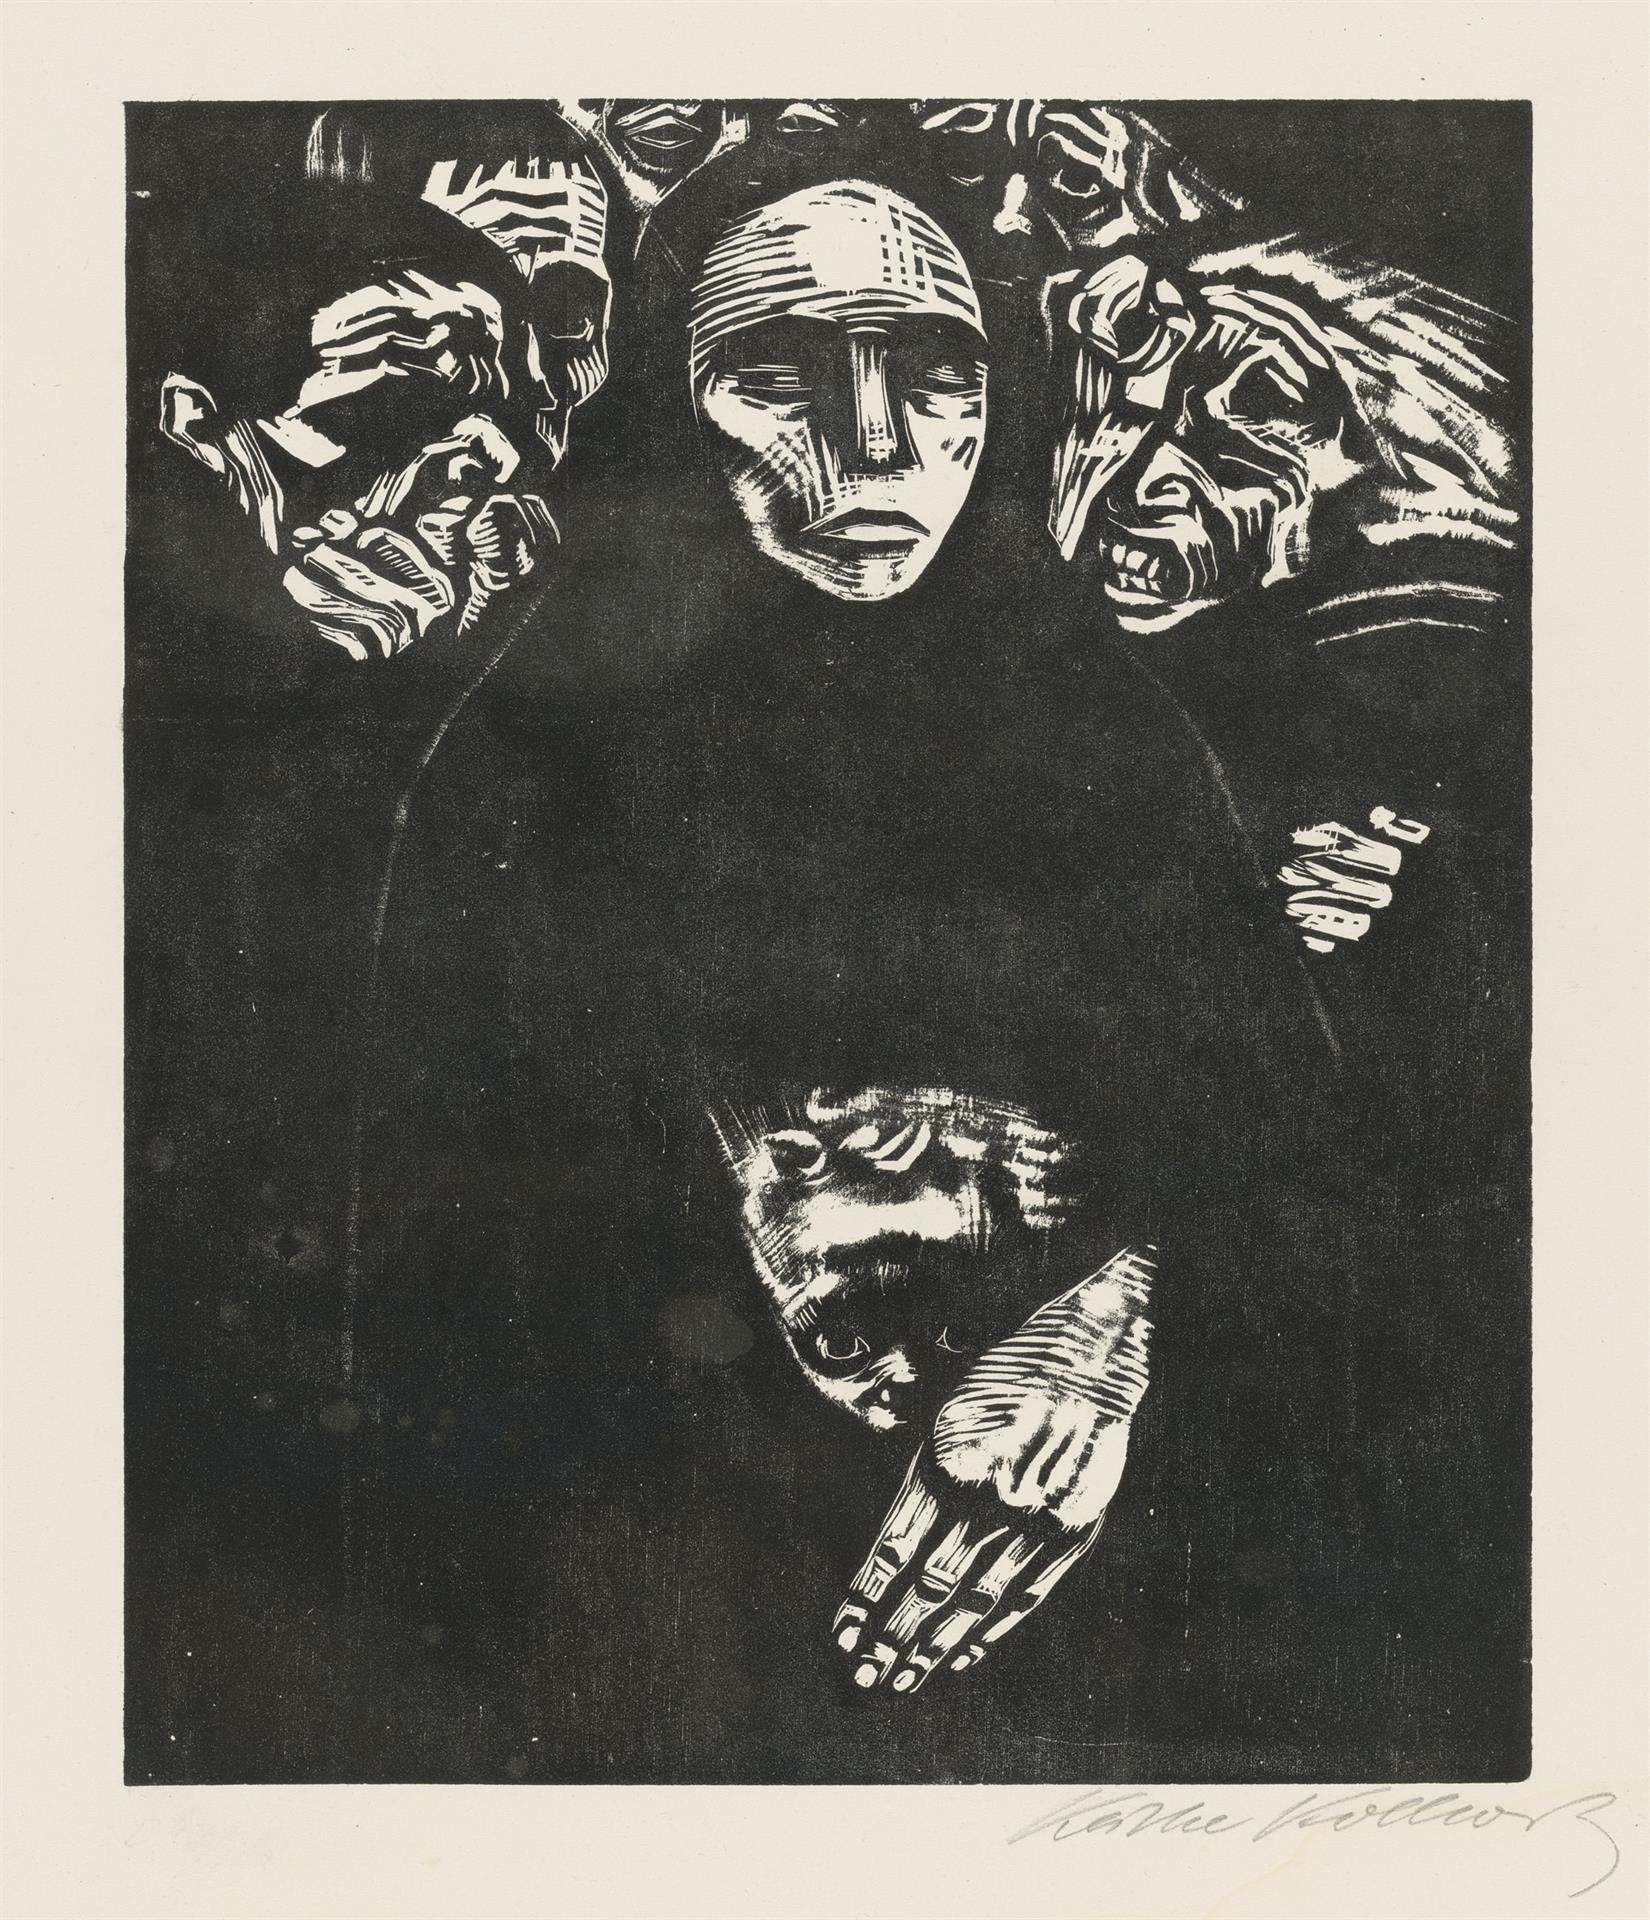 Käthe Kollwitz, Le Peuple, planche 7 de la série »Guerre« ,1922, gravure sur bois, Kn 190 VII, Collection Kollwitz de Cologne © Käthe Kollwitz Museum Köln